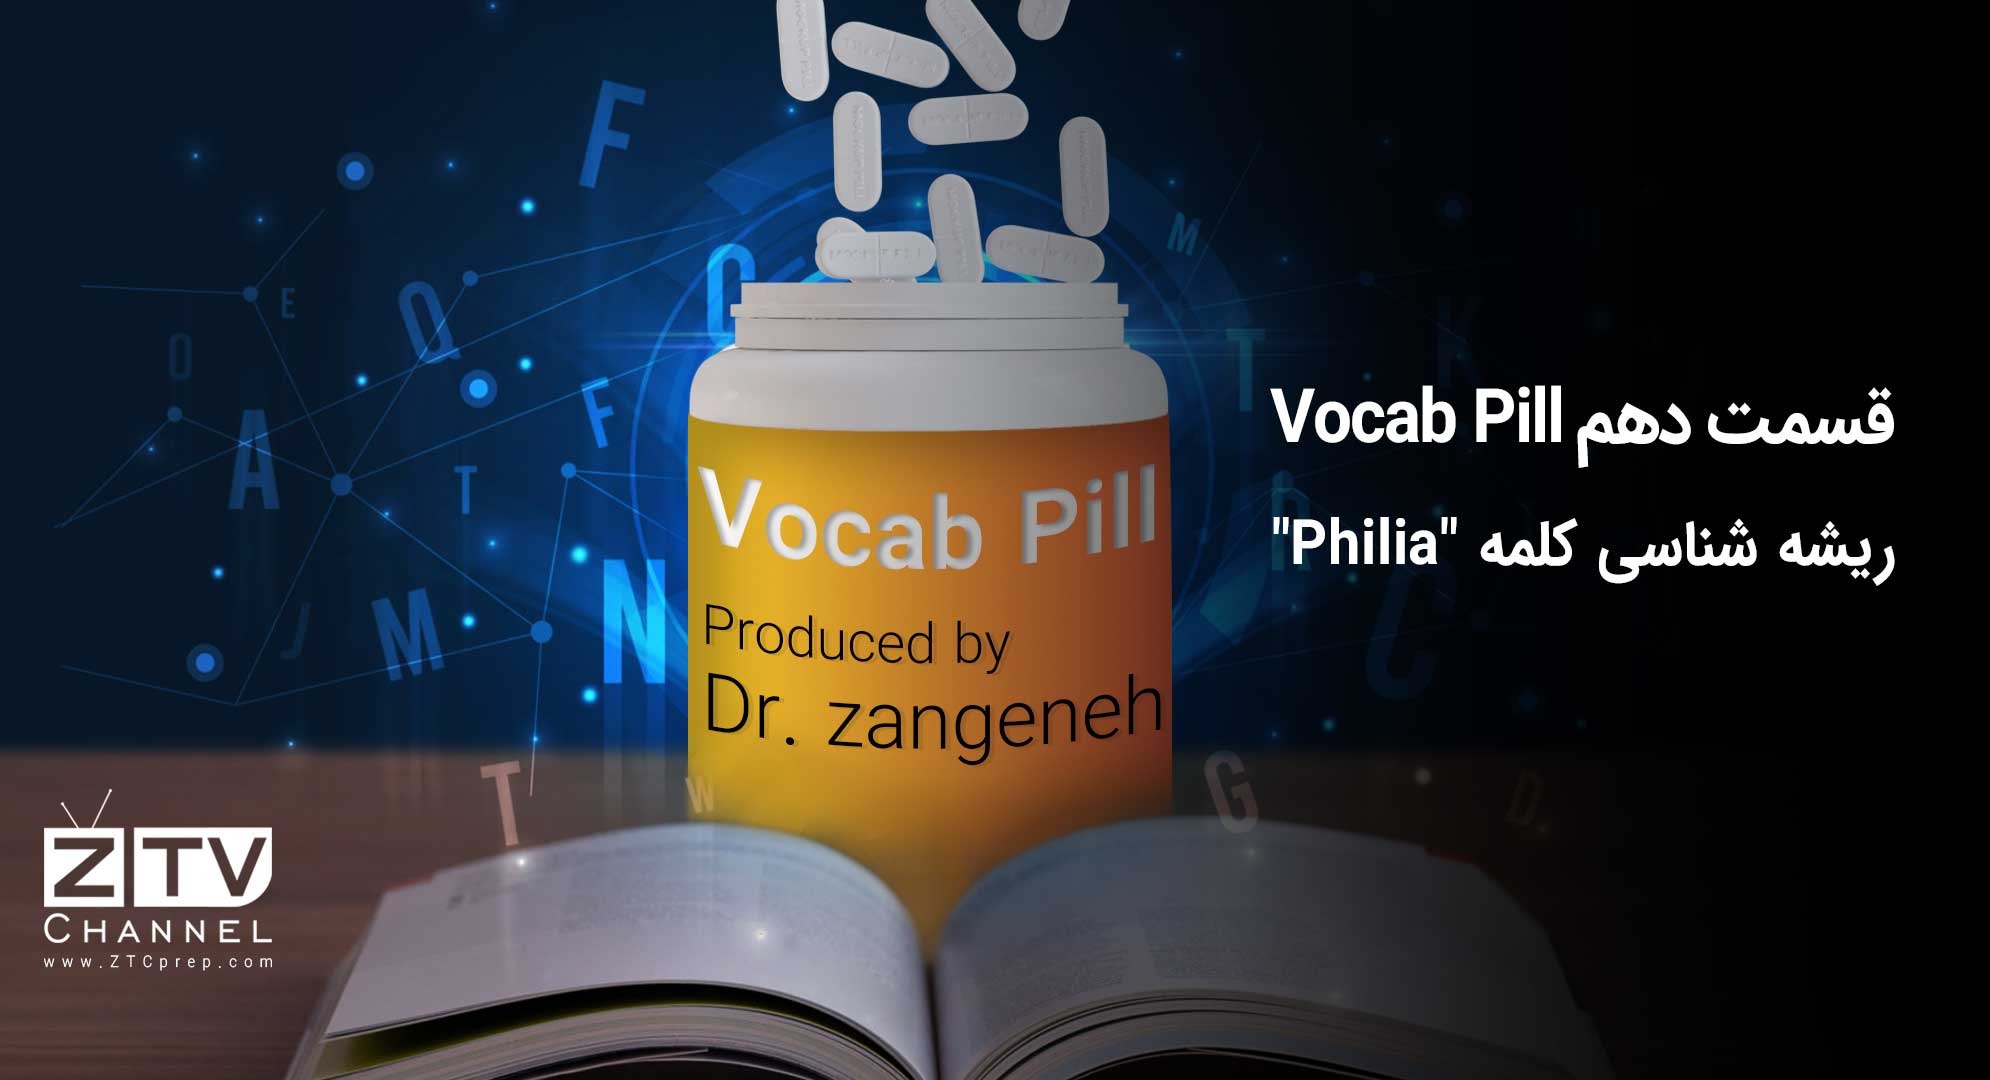 قسمت دهم Vocab Pill-ریشه شناسی کلمه Philia